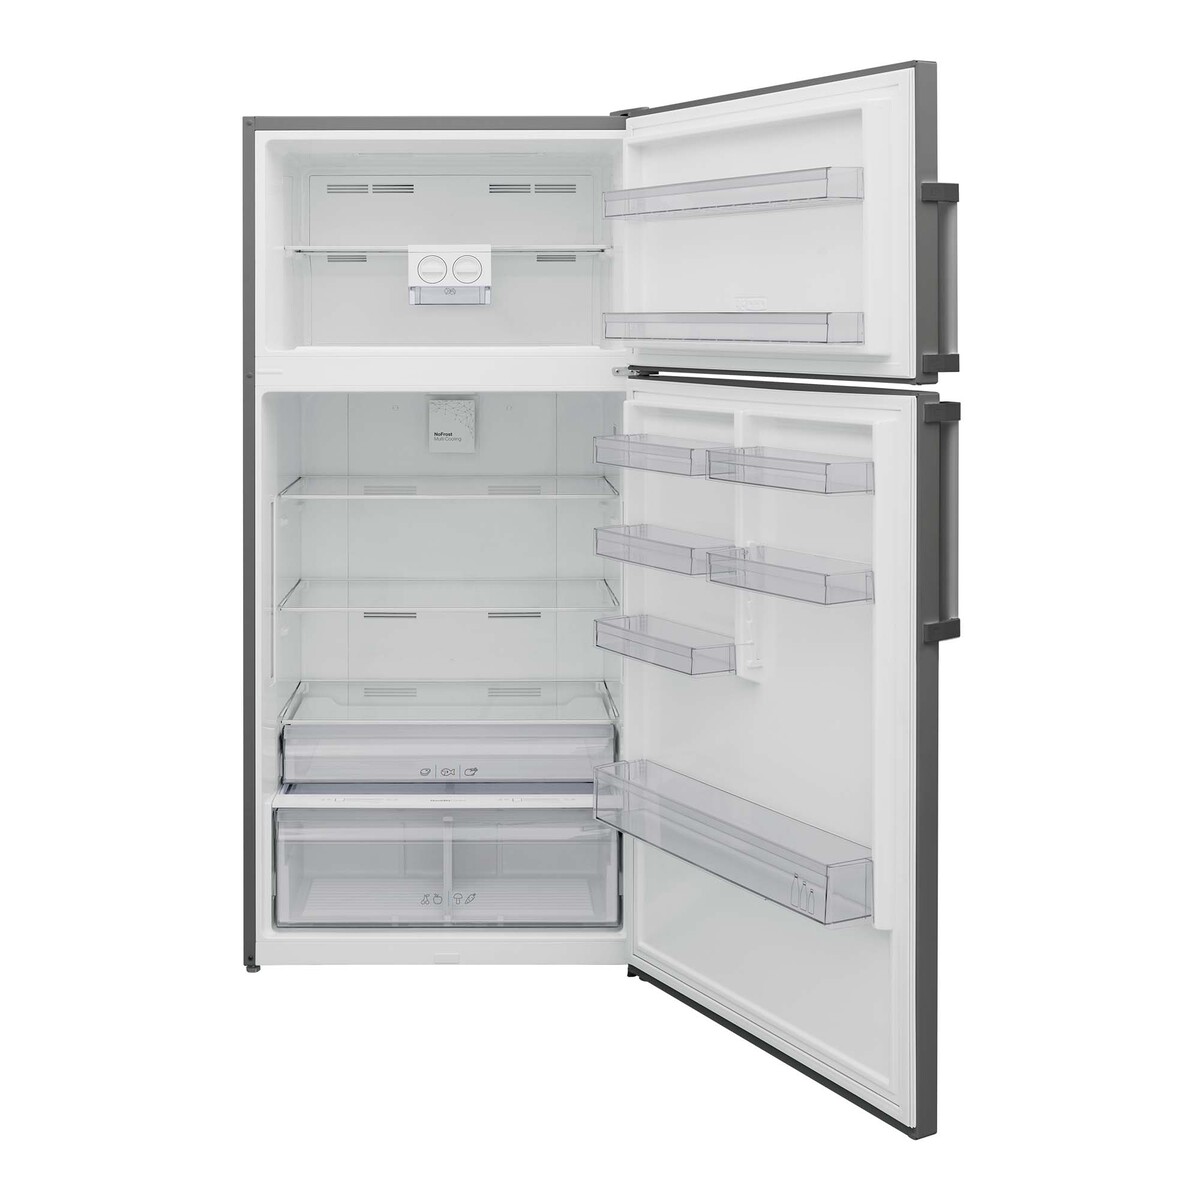 Vestel Refrigerator RM850TF3EIL 850Ltr